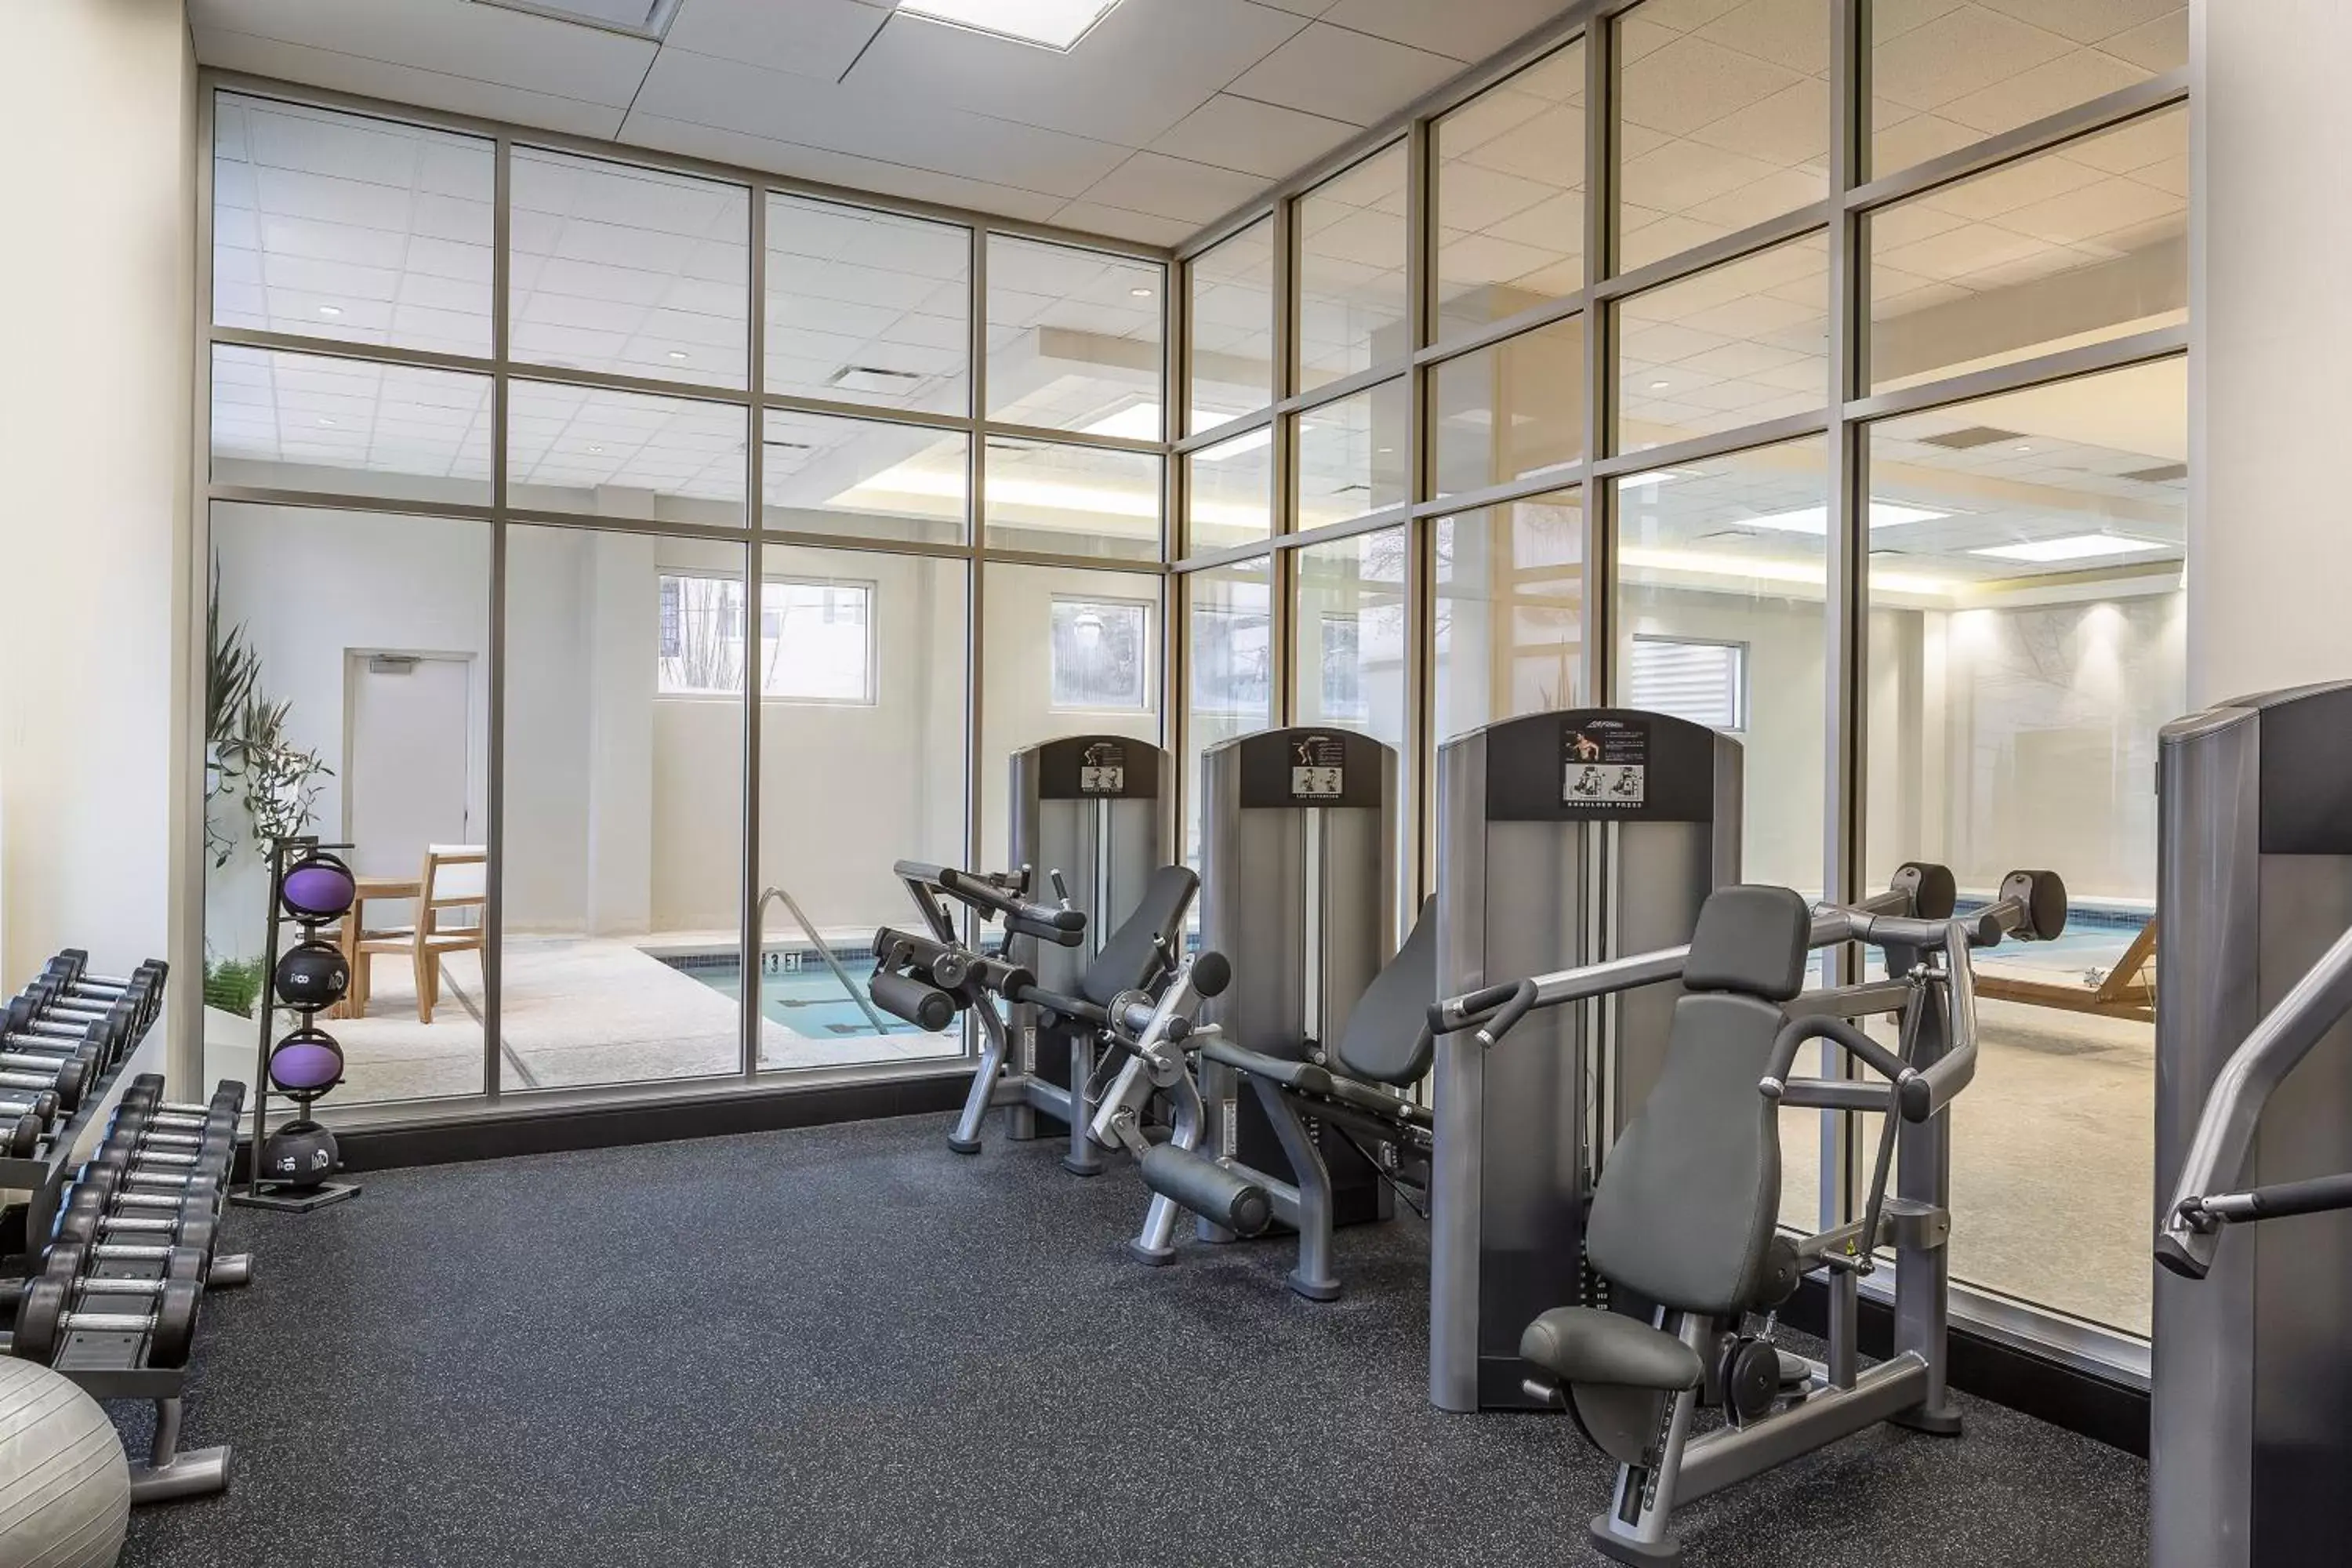 Fitness centre/facilities, Fitness Center/Facilities in Hyatt Centric Midtown Atlanta